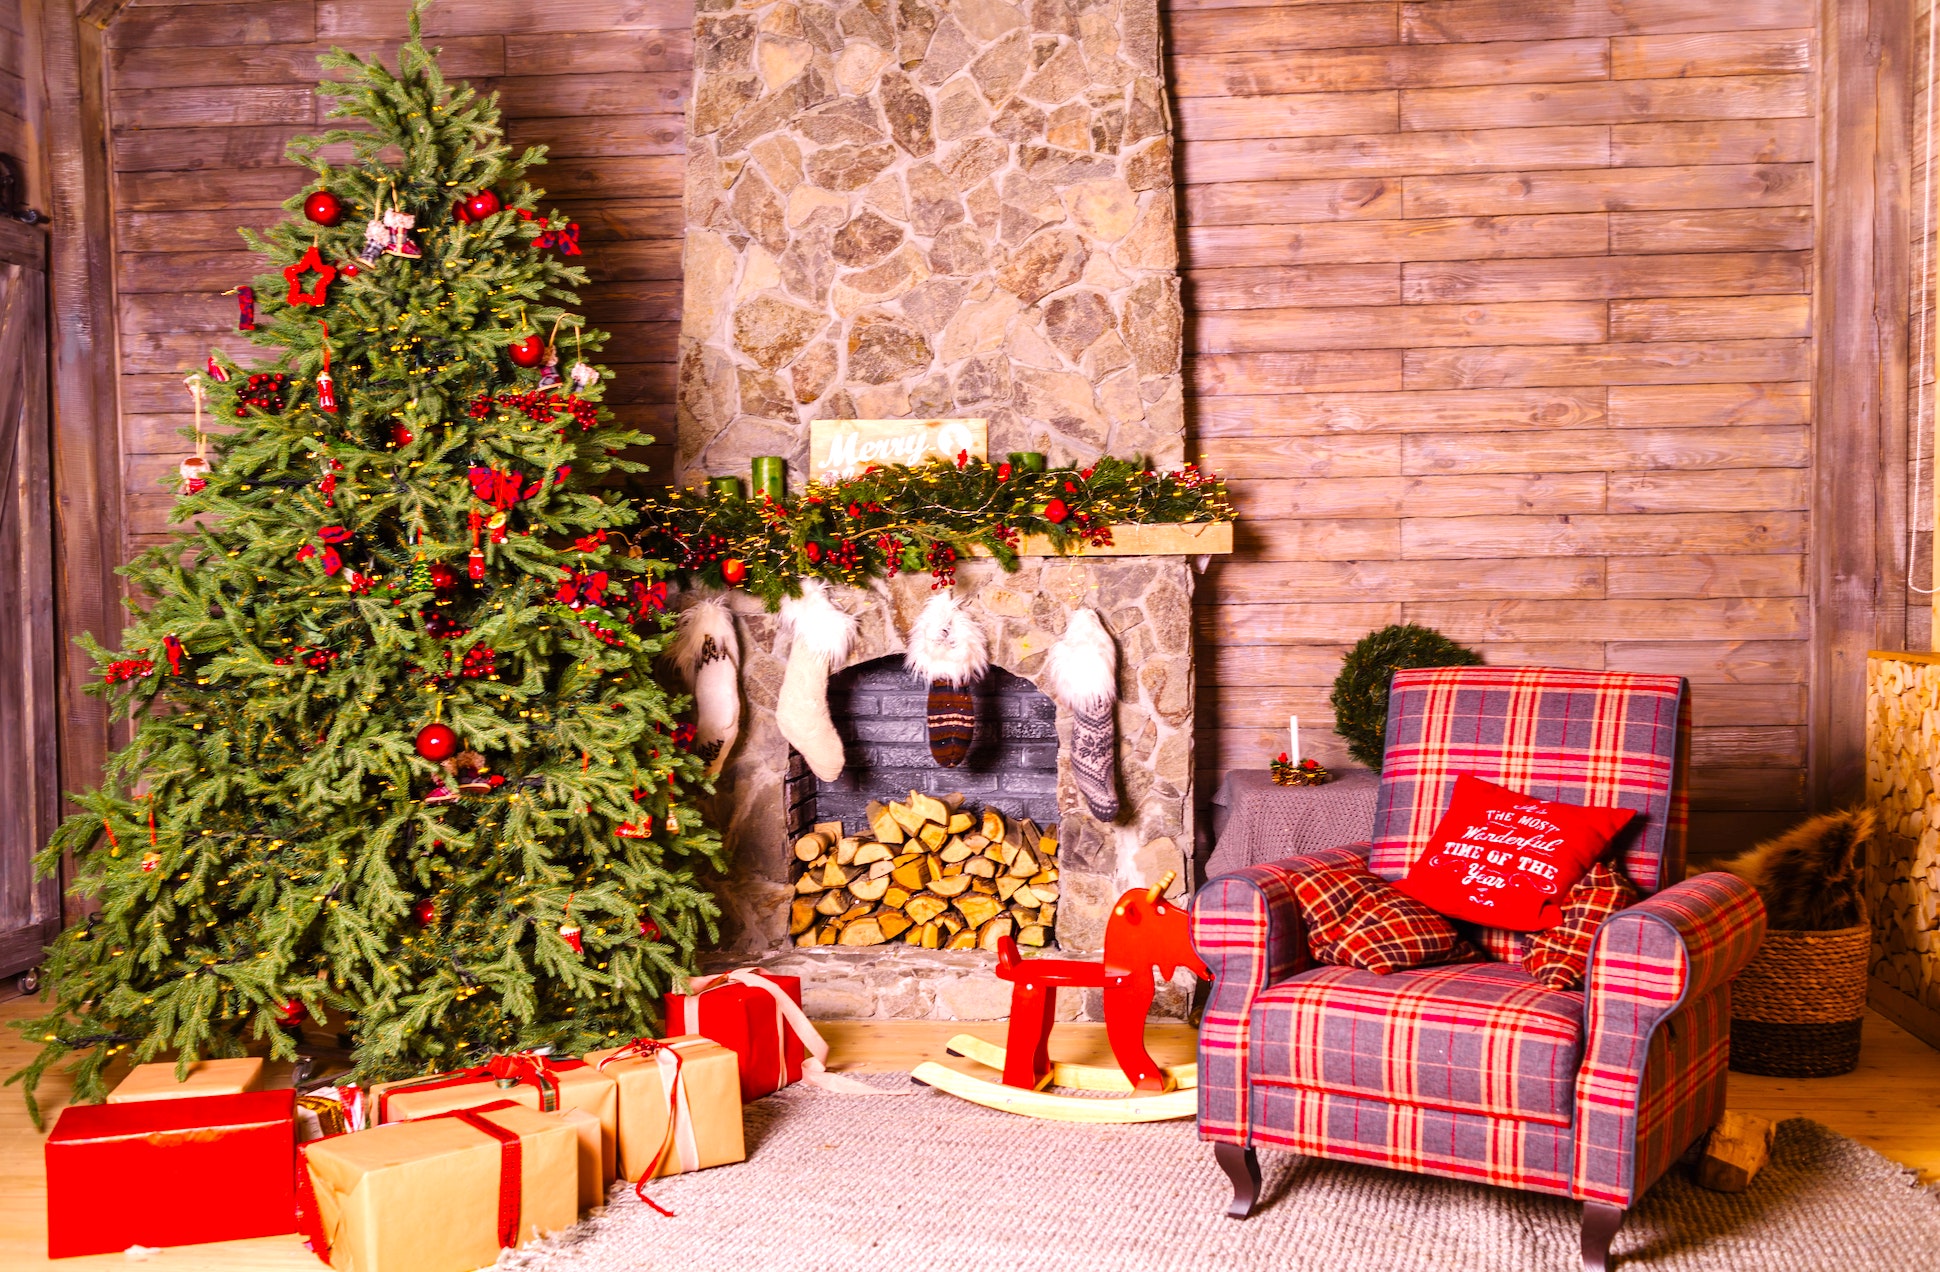 Por qué decoramos un árbol en Navidad. Los orígenes y significados de esta tradición